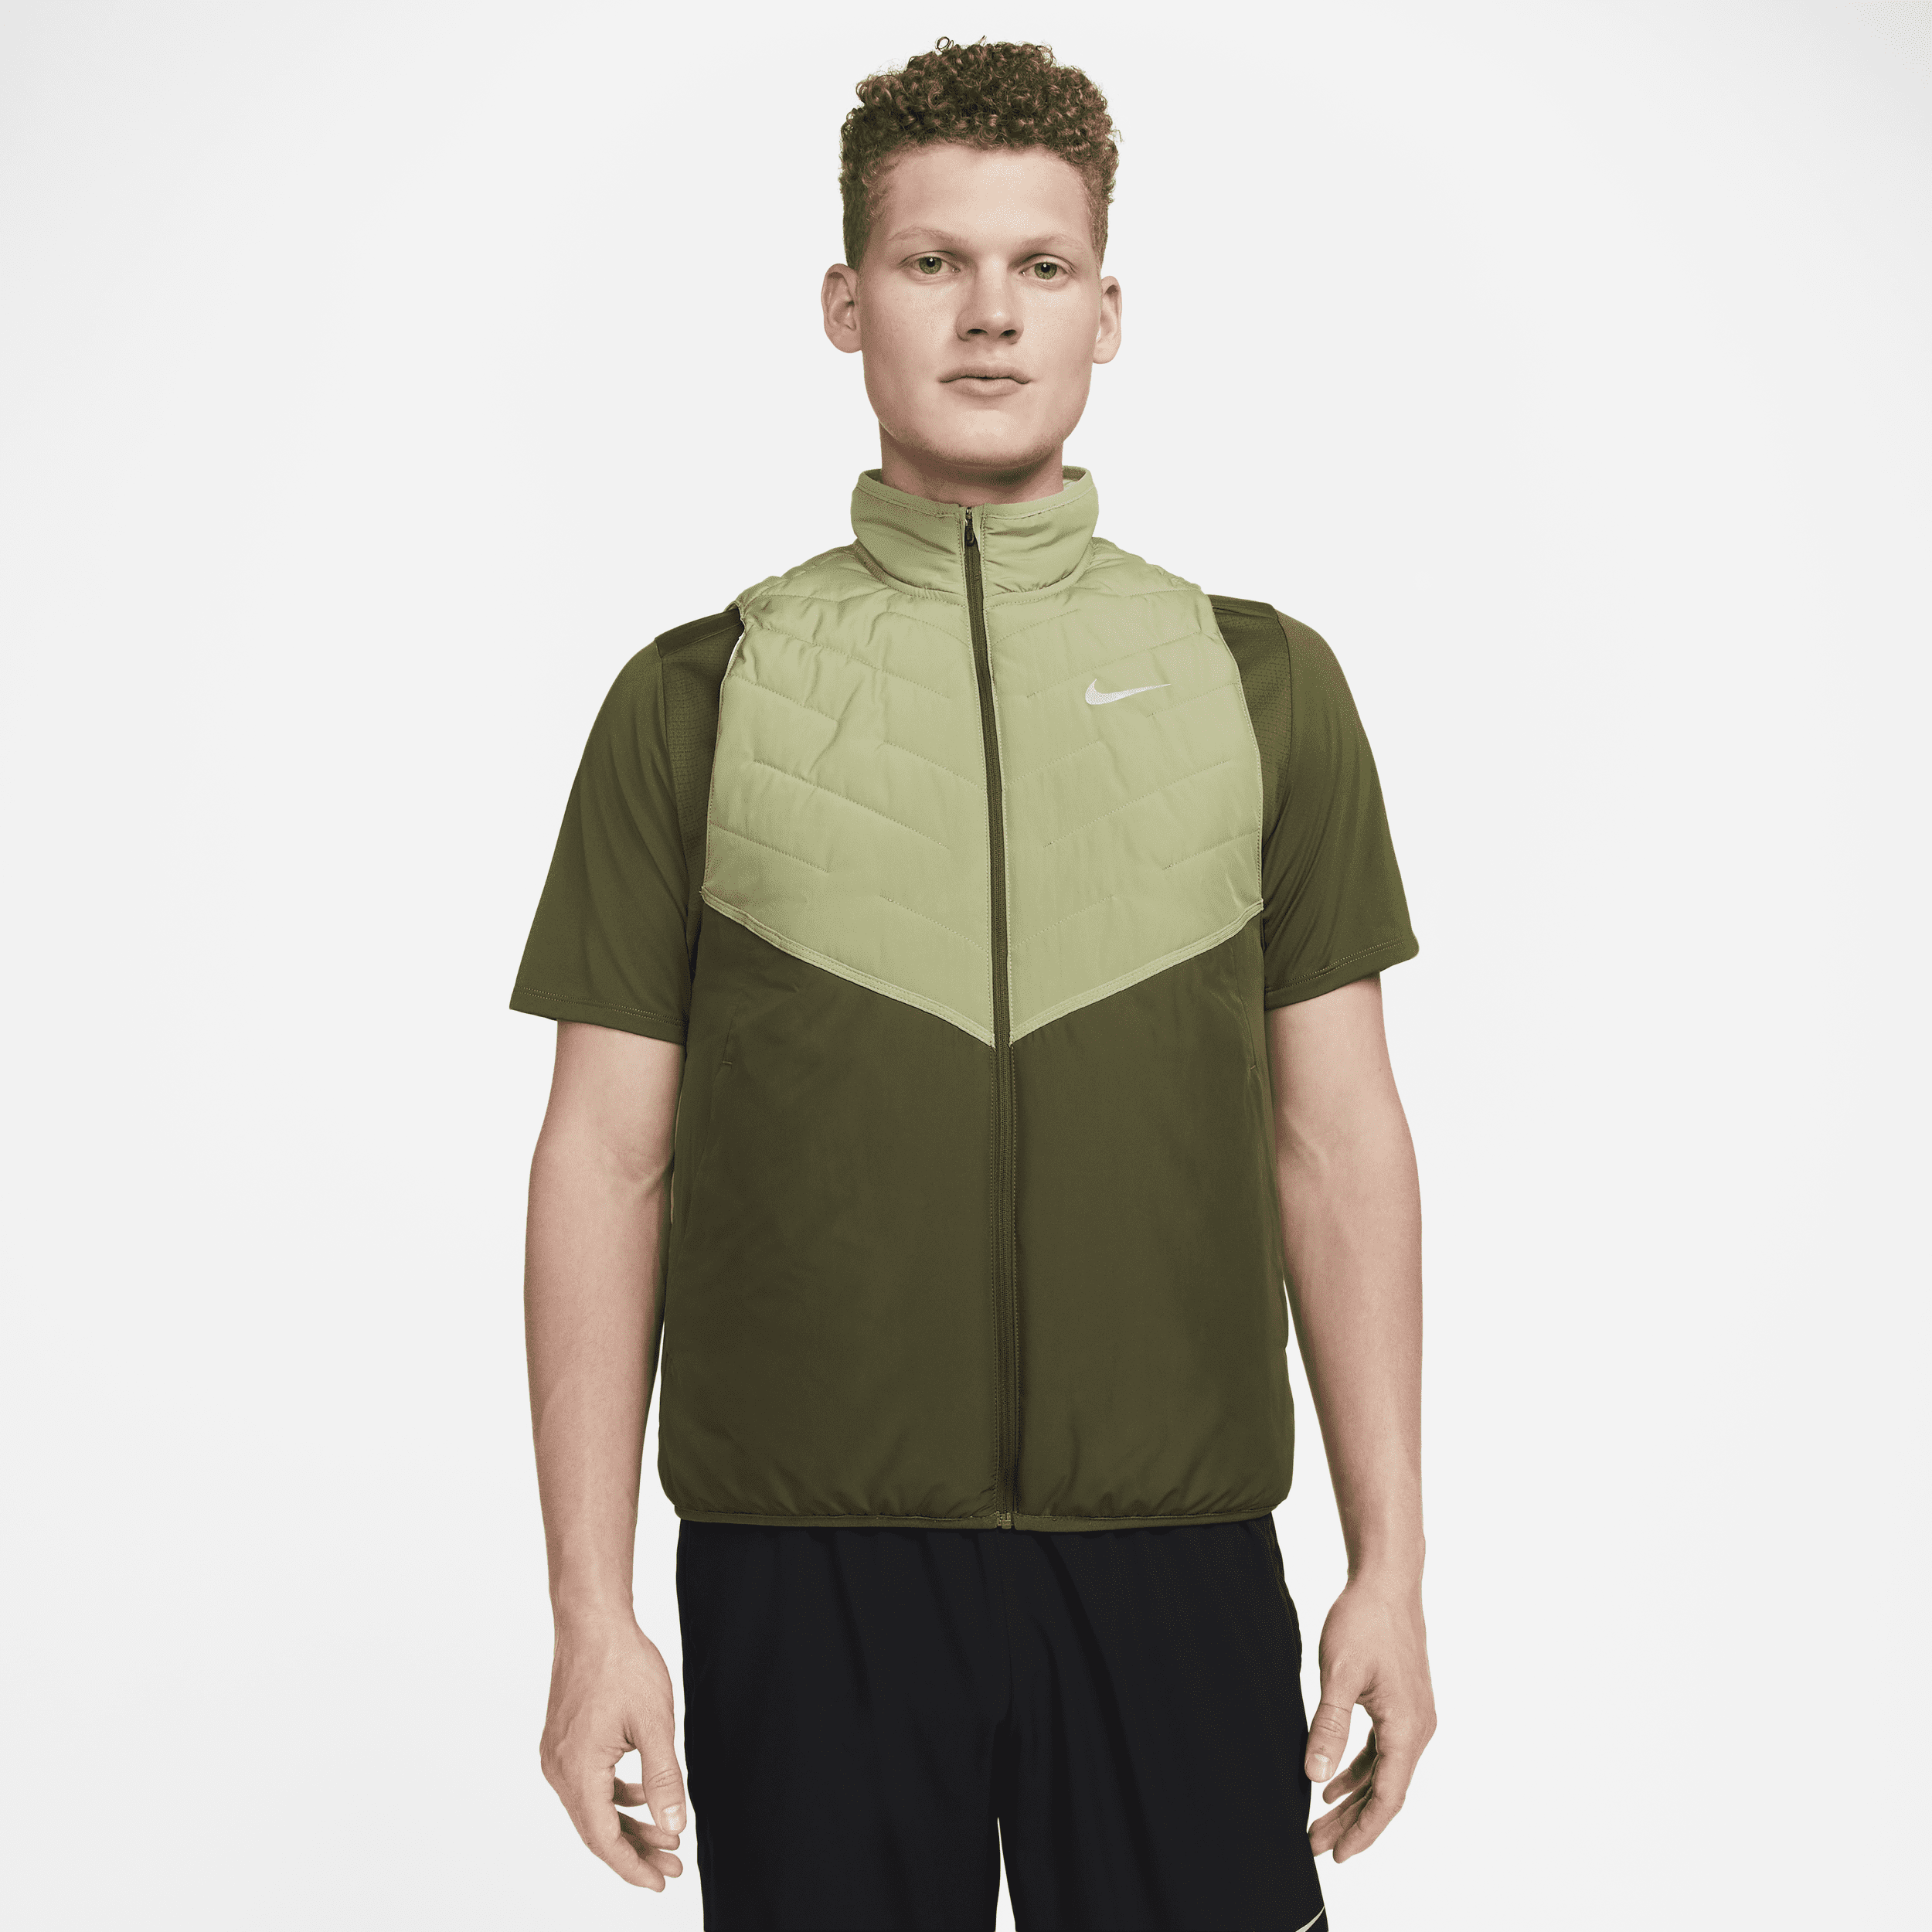 Nike Therma-FIT Repel-løbevest med syntetisk fyld til mænd - grøn